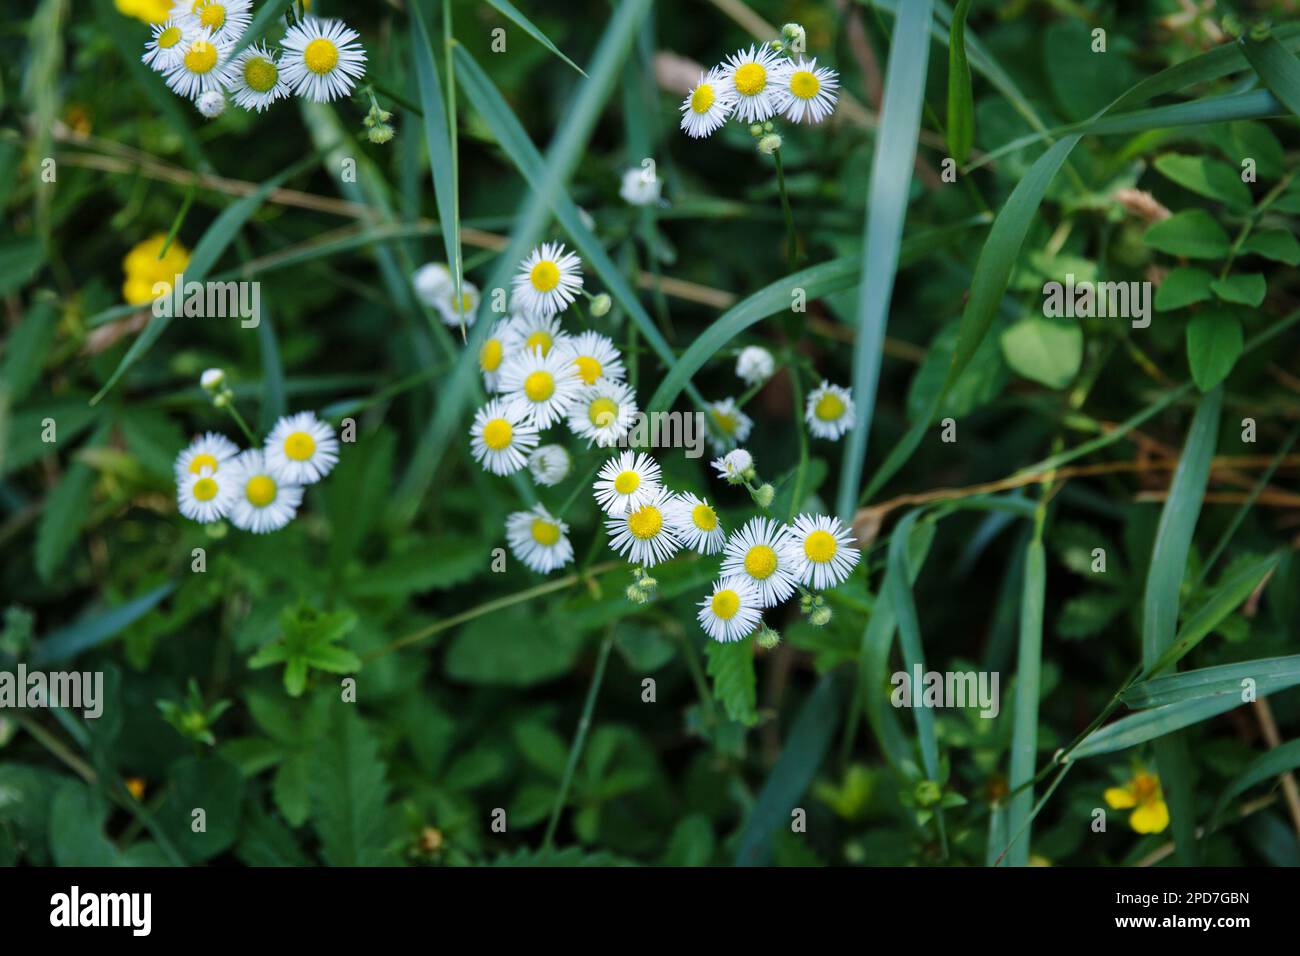 Fleurs de camomille dans un pré en herbe, sur un fond vert, vue de dessus. Plante médicinale à la maison Banque D'Images